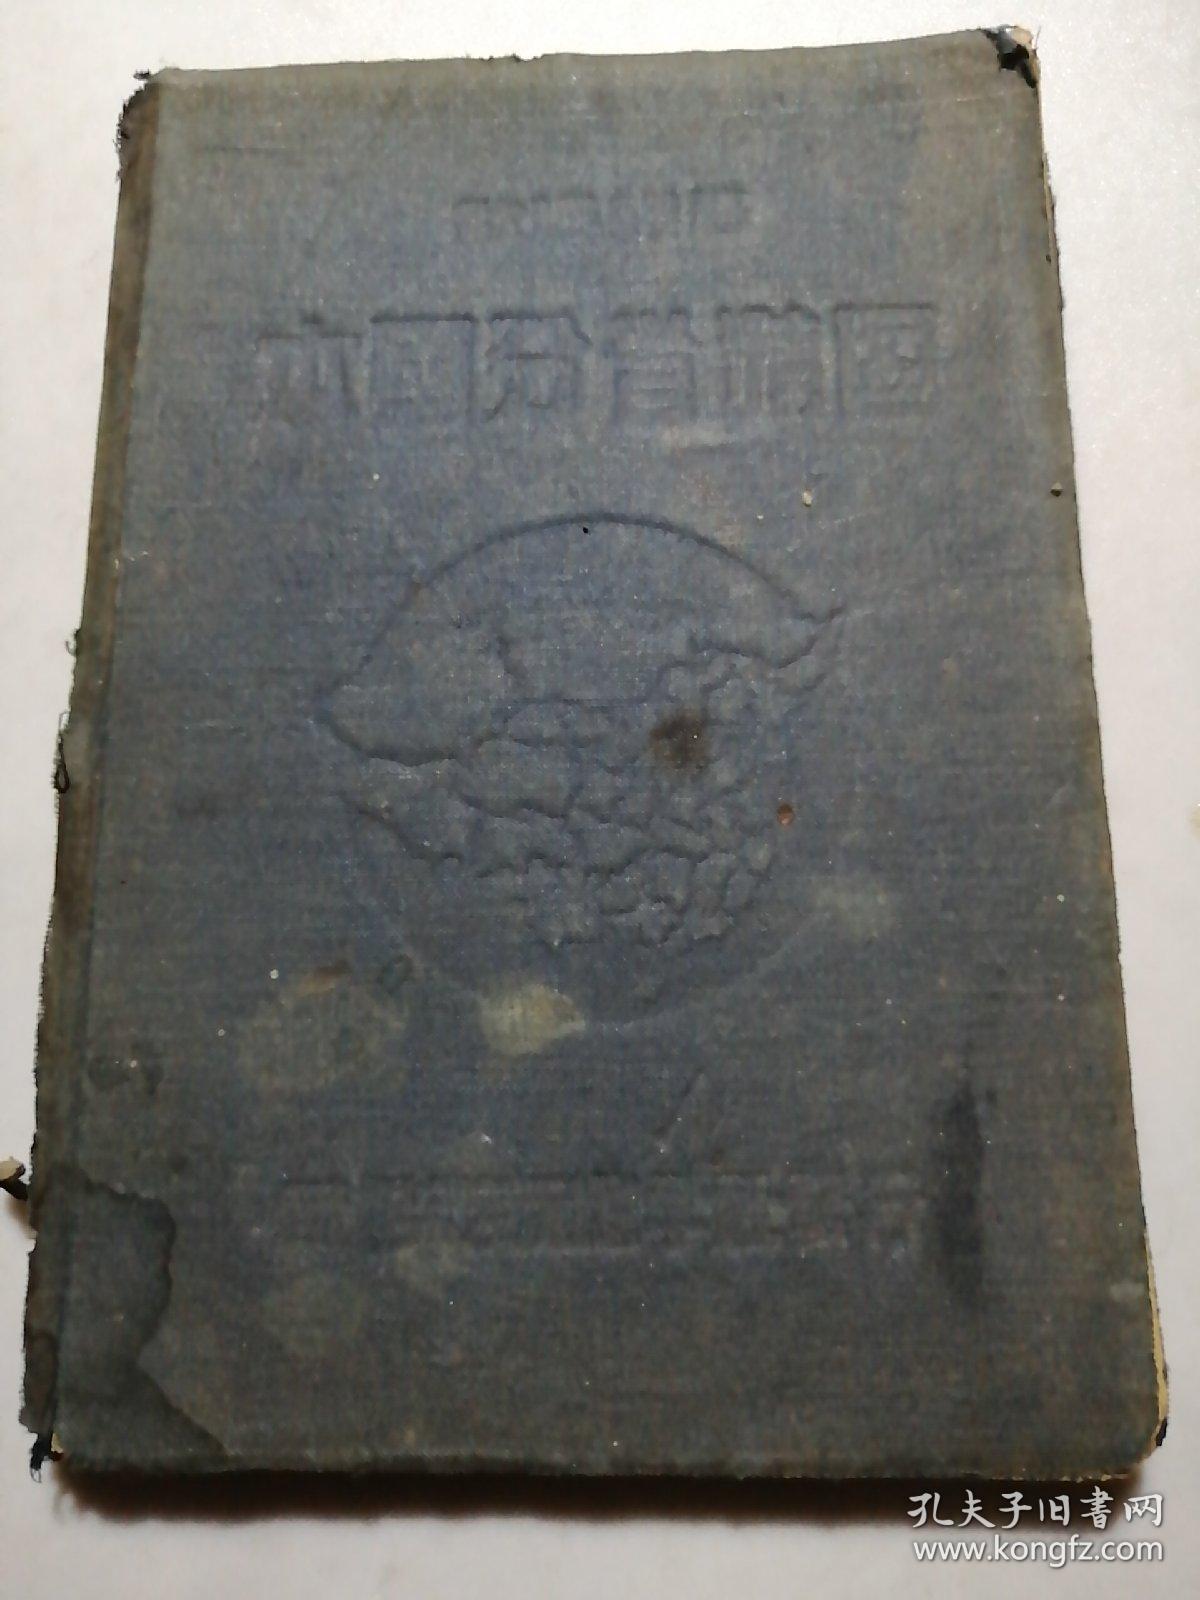 本国分省精图 中华民国1927年初版